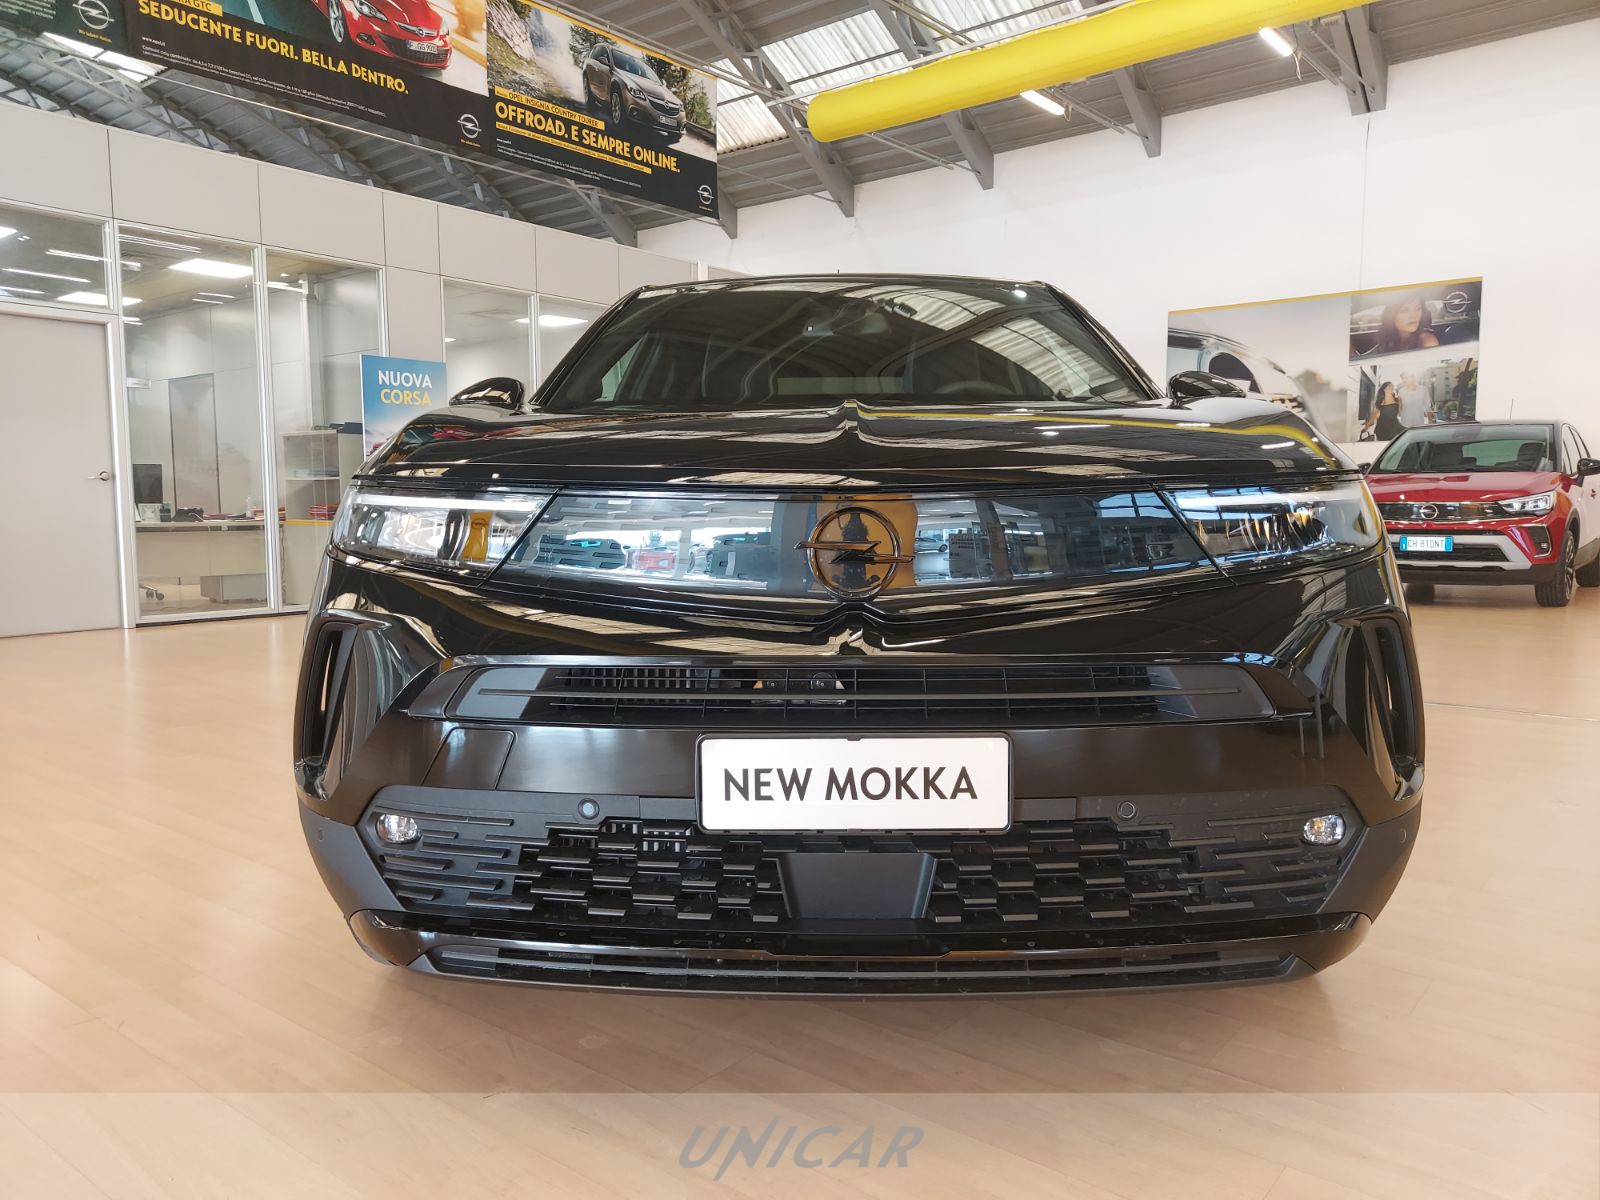 UNICAR Opel Mokka